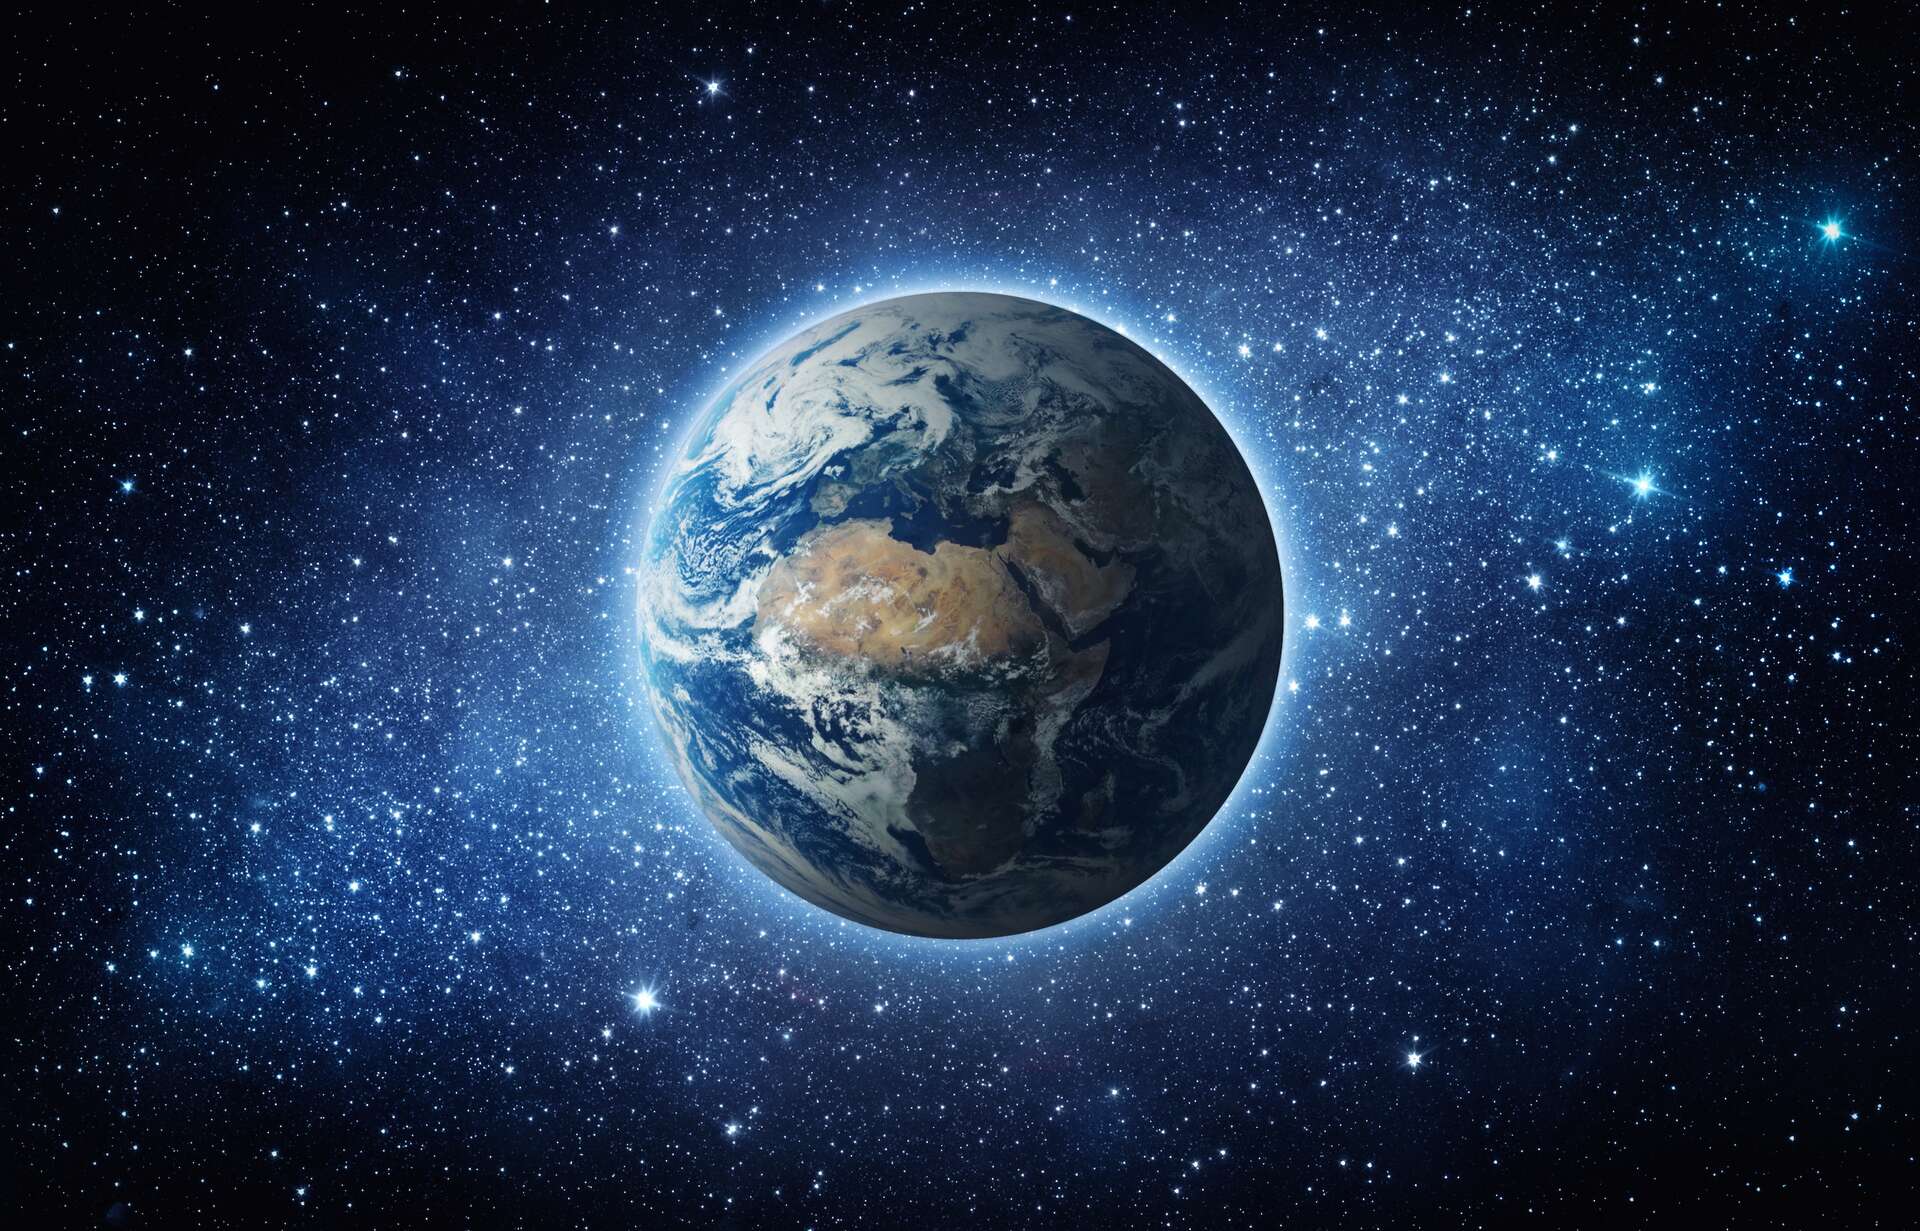 Als de aarde een exoplaneet was, had de James Webb-telescoop dan leven kunnen detecteren?